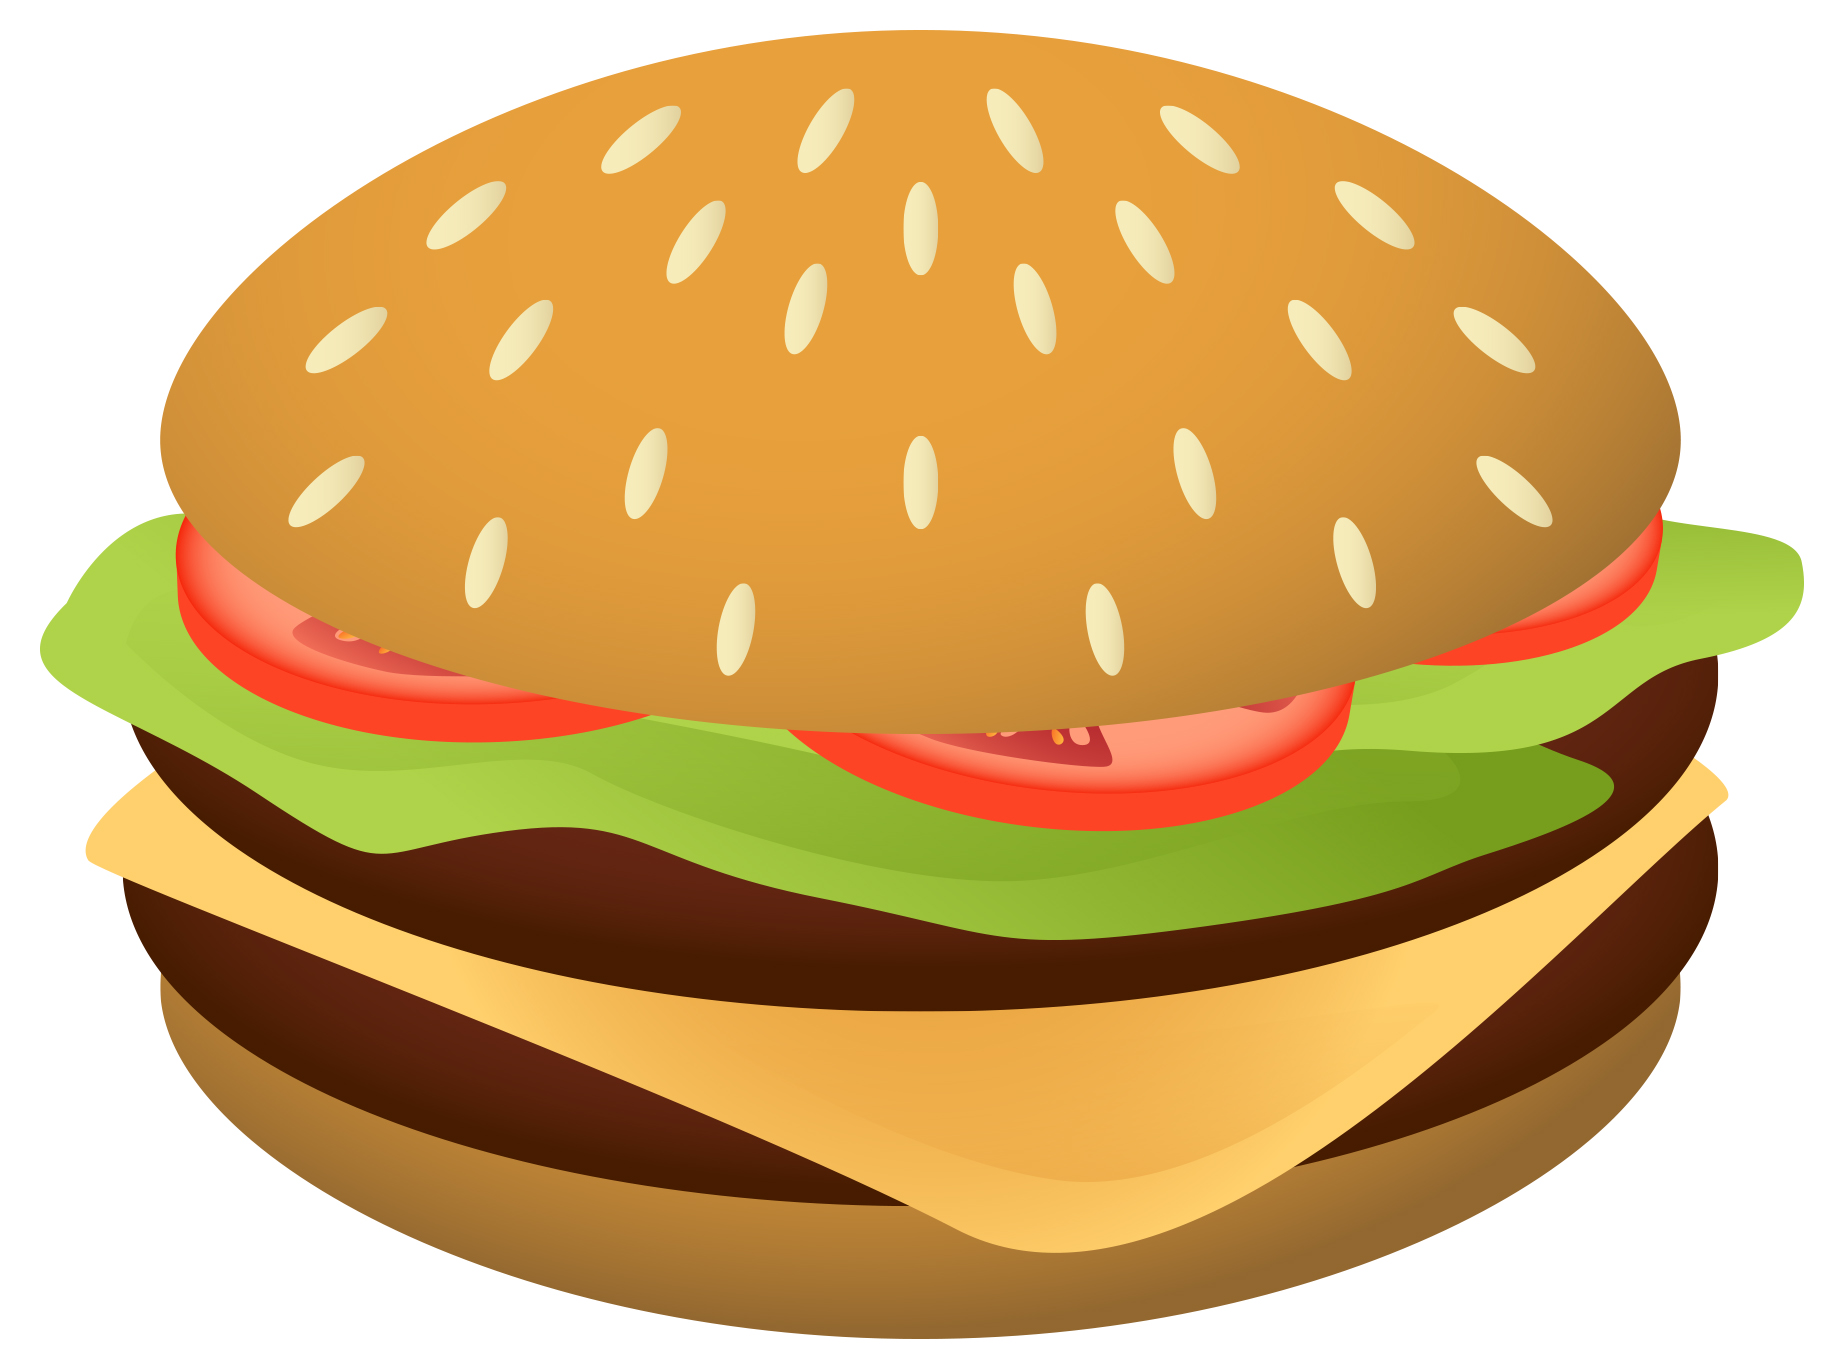 Burger Clipart , HD Wallpaper & Backgrounds